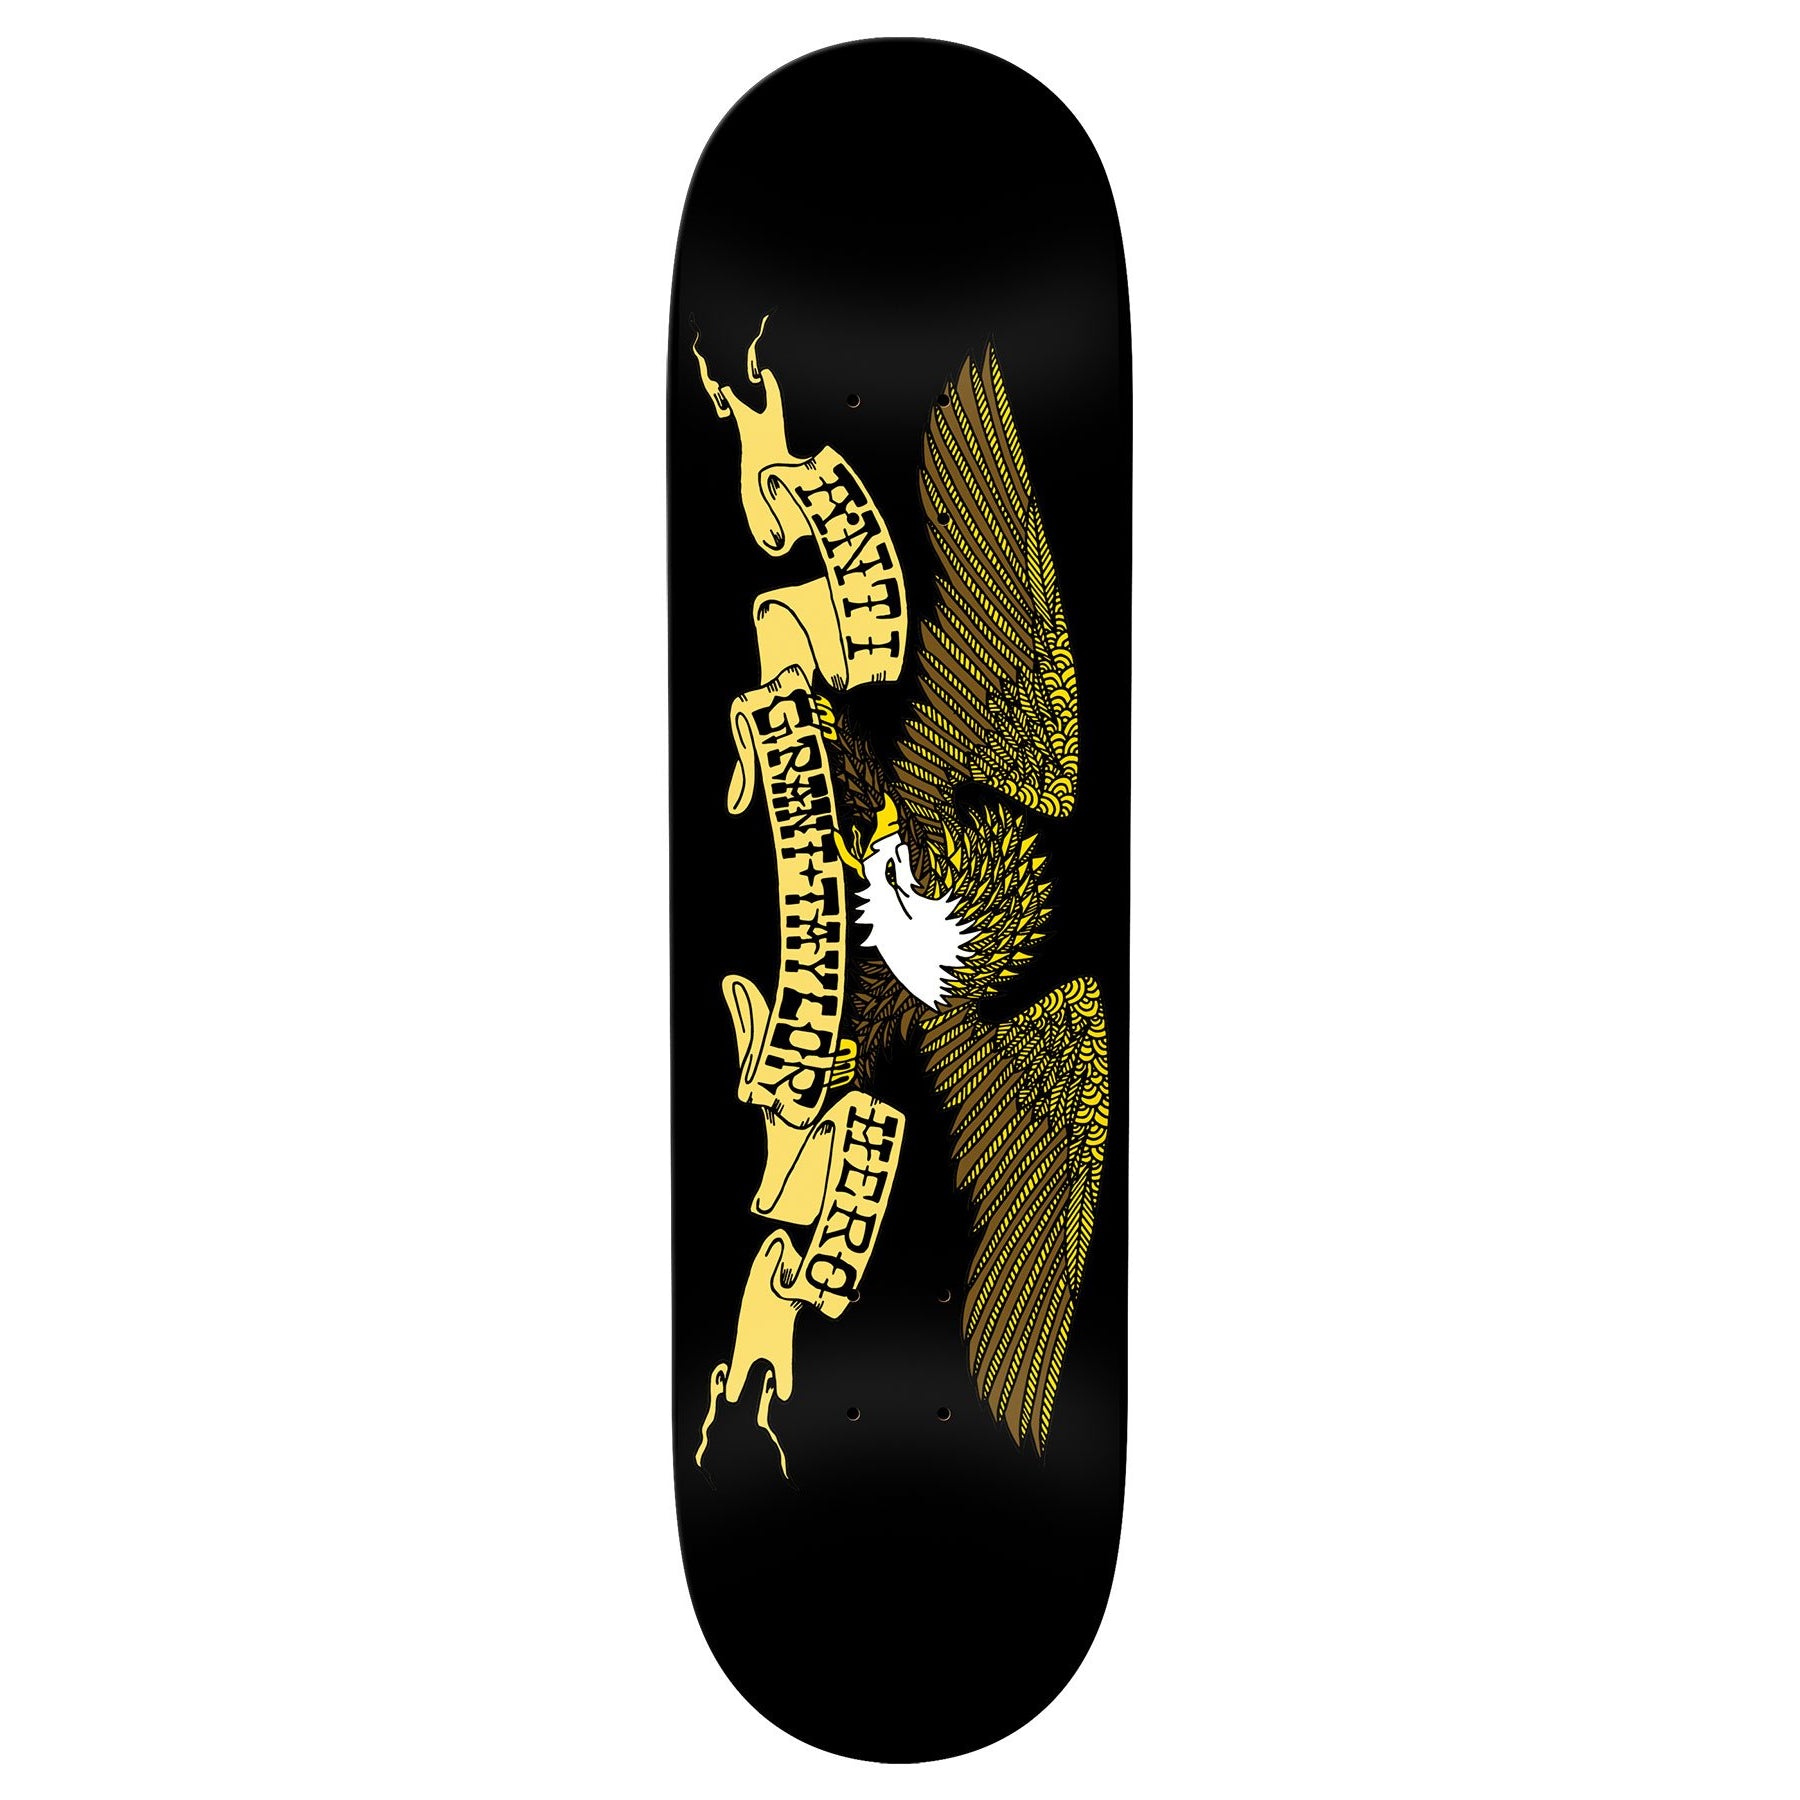 Grant Taylor Pro Model Antihero Skateboard Deck